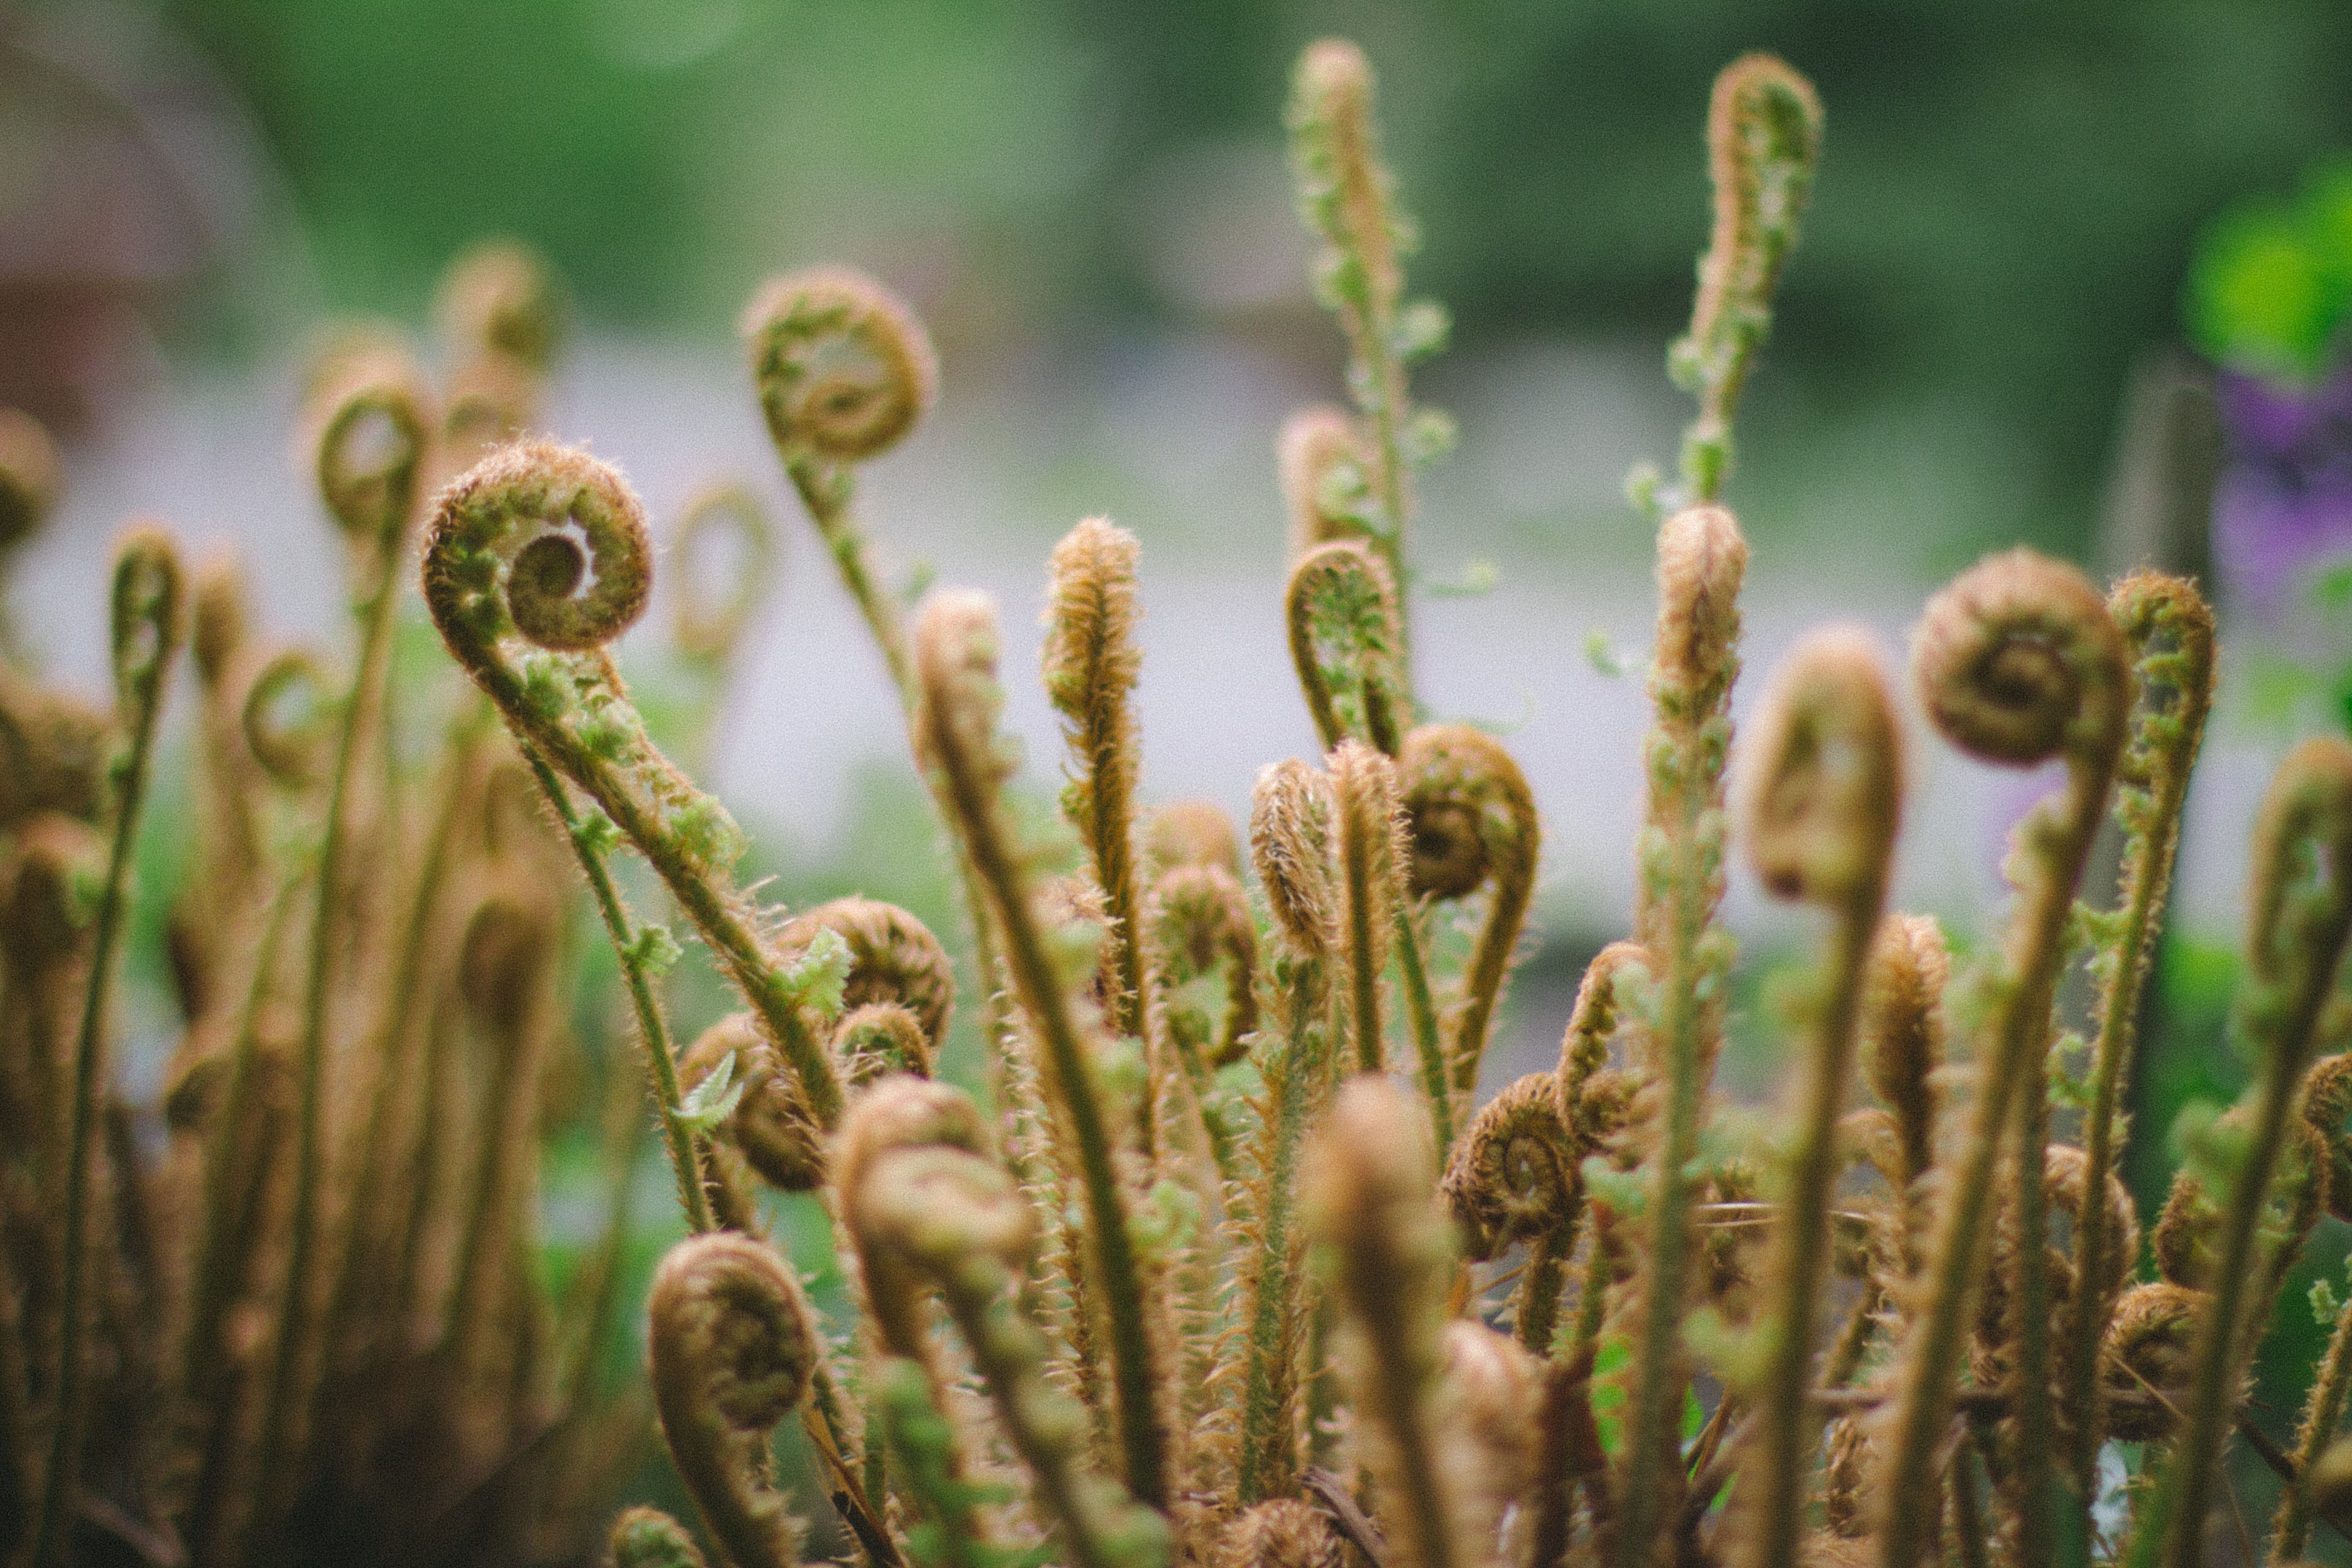 Field of fiddlehead ferns